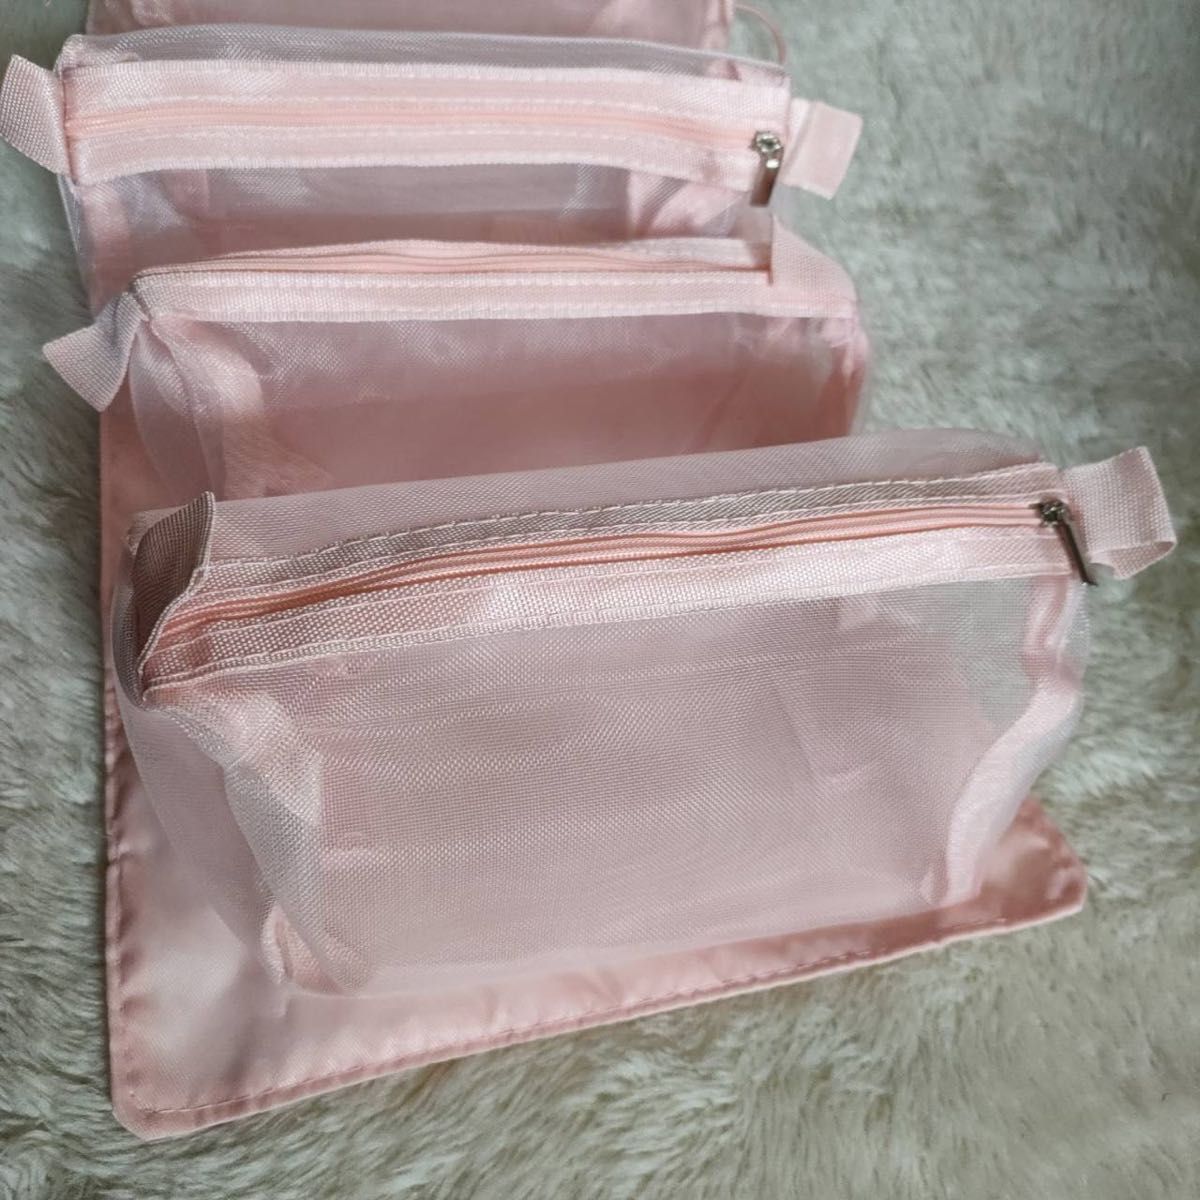 トラベルポーチ ピンク 化粧ポーチ コスメポーチ 大容量 旅行 出張 韓国